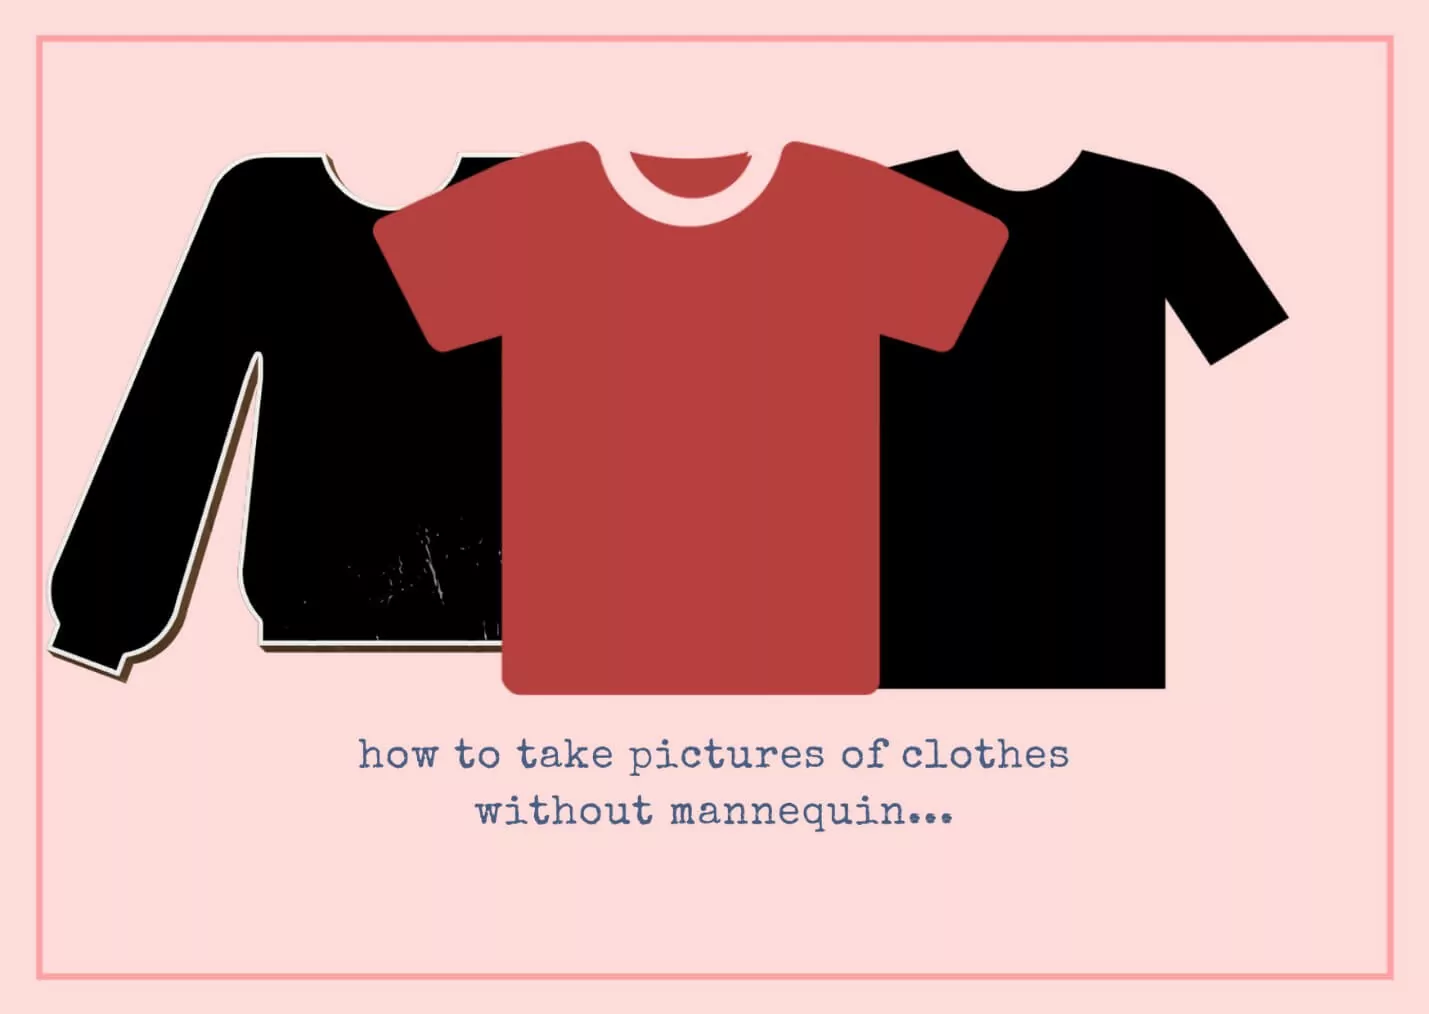 Jak robić zdjęcia ubrań bez manekina? Przedstawiony obraz